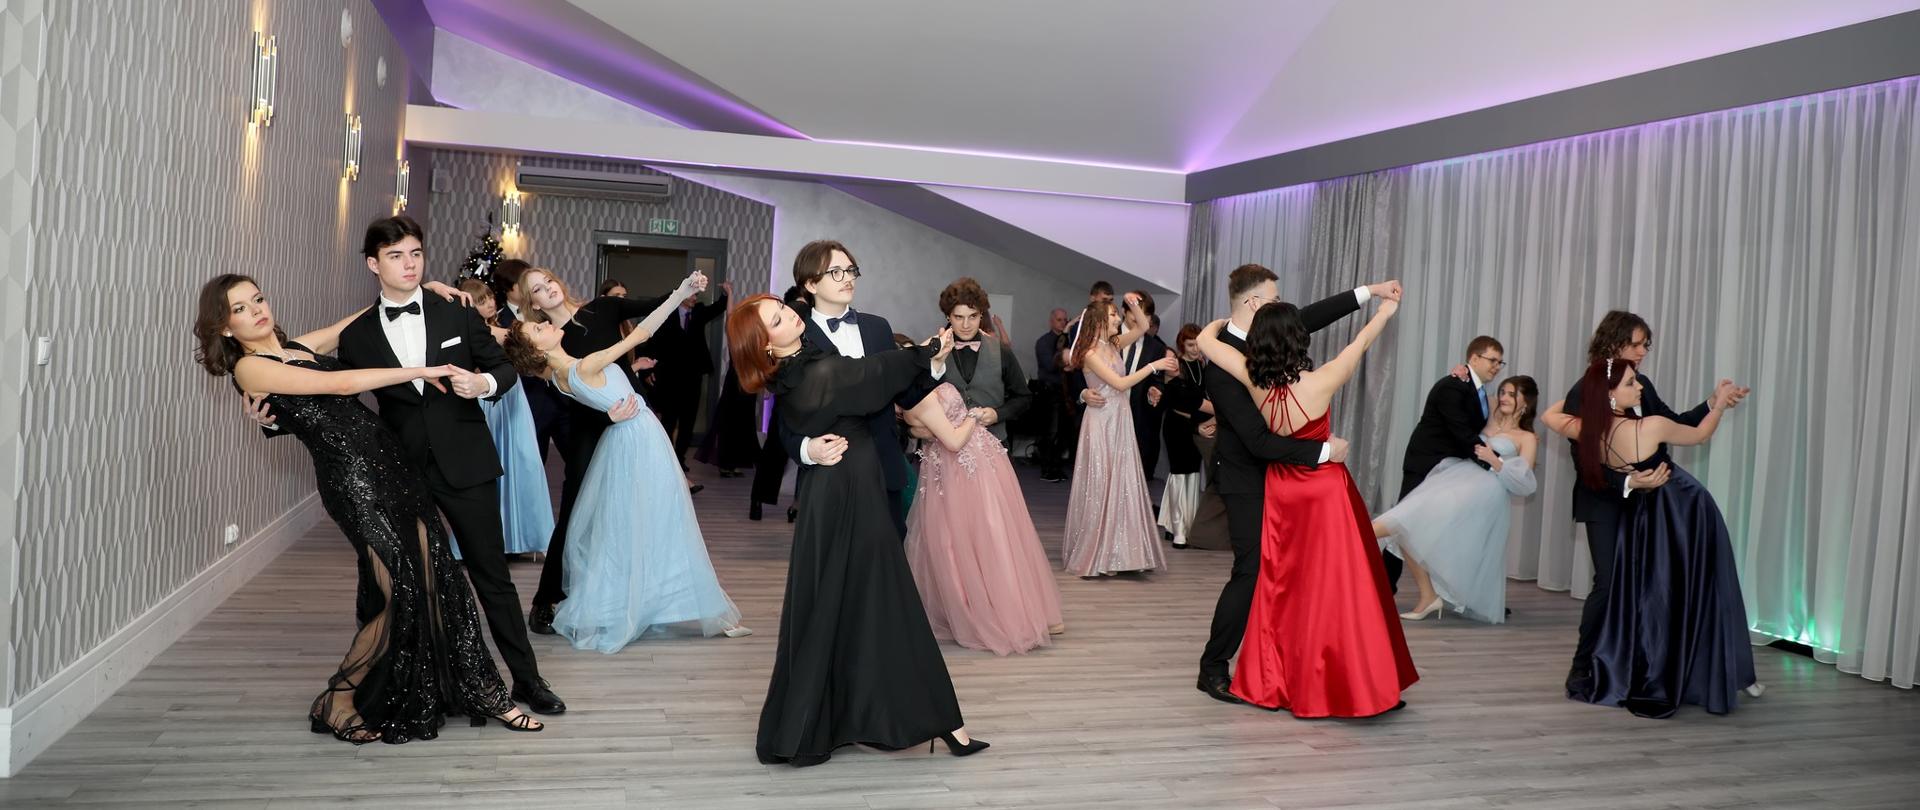 Zdjęcie przedstawia grupę osób w strojach wieczorowych, które tańczą w jasnym, nowoczesnym pomieszczeniu. Osoby są sparowane i wydają się być zaangażowane w taniec. 